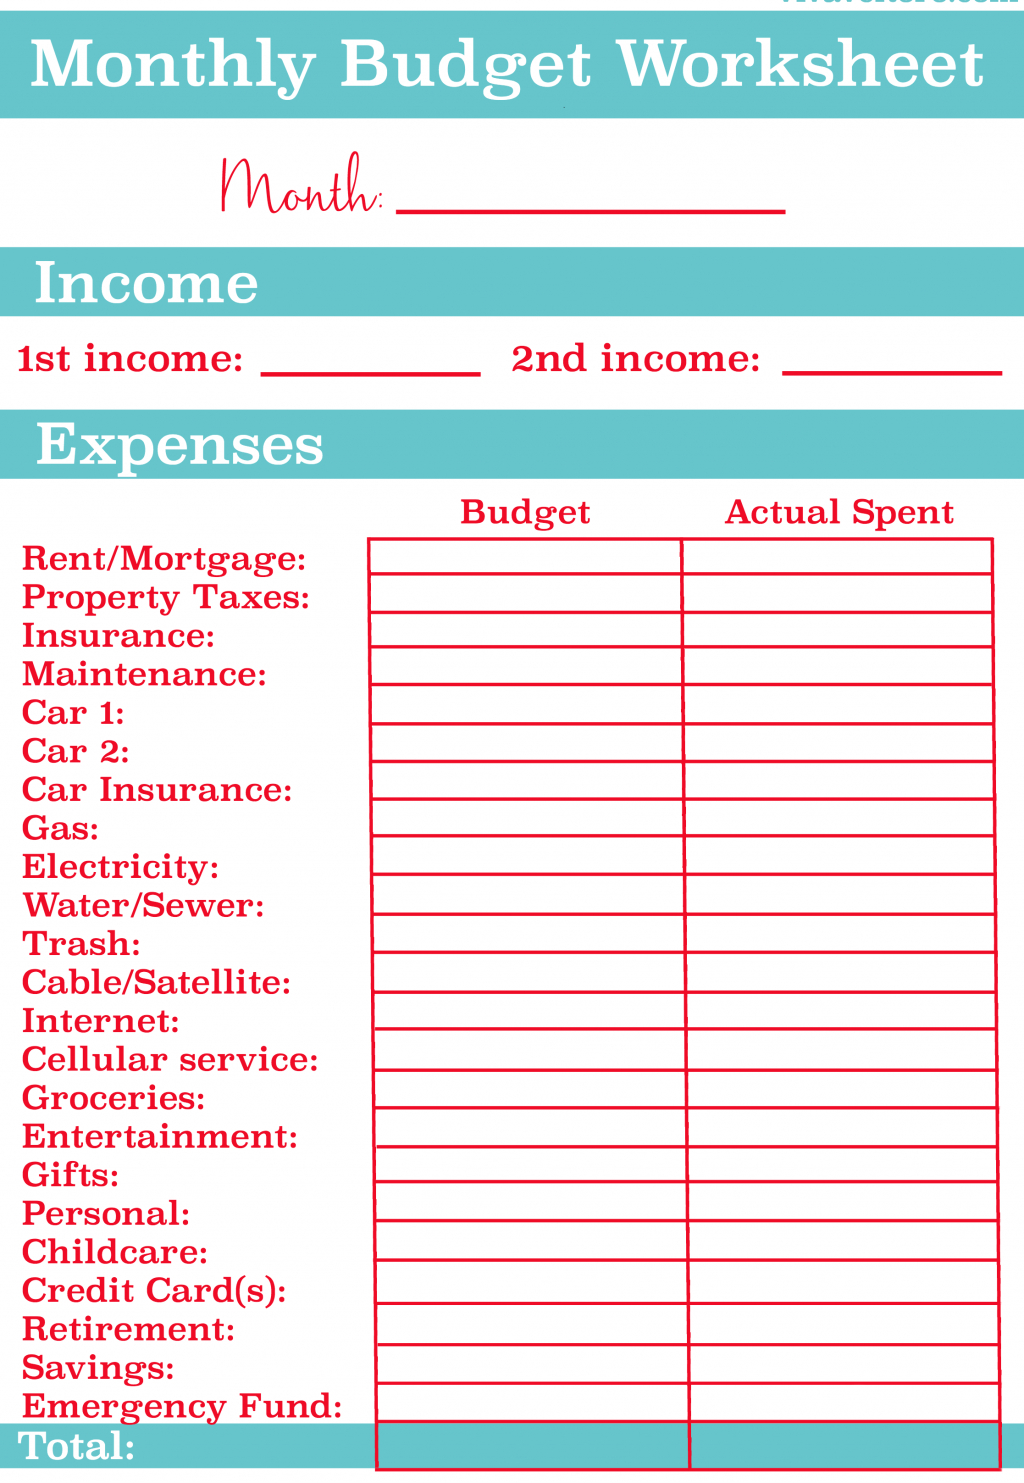 Weekly Budget Spreadsheet Bi Worksheet Pdf Free Download